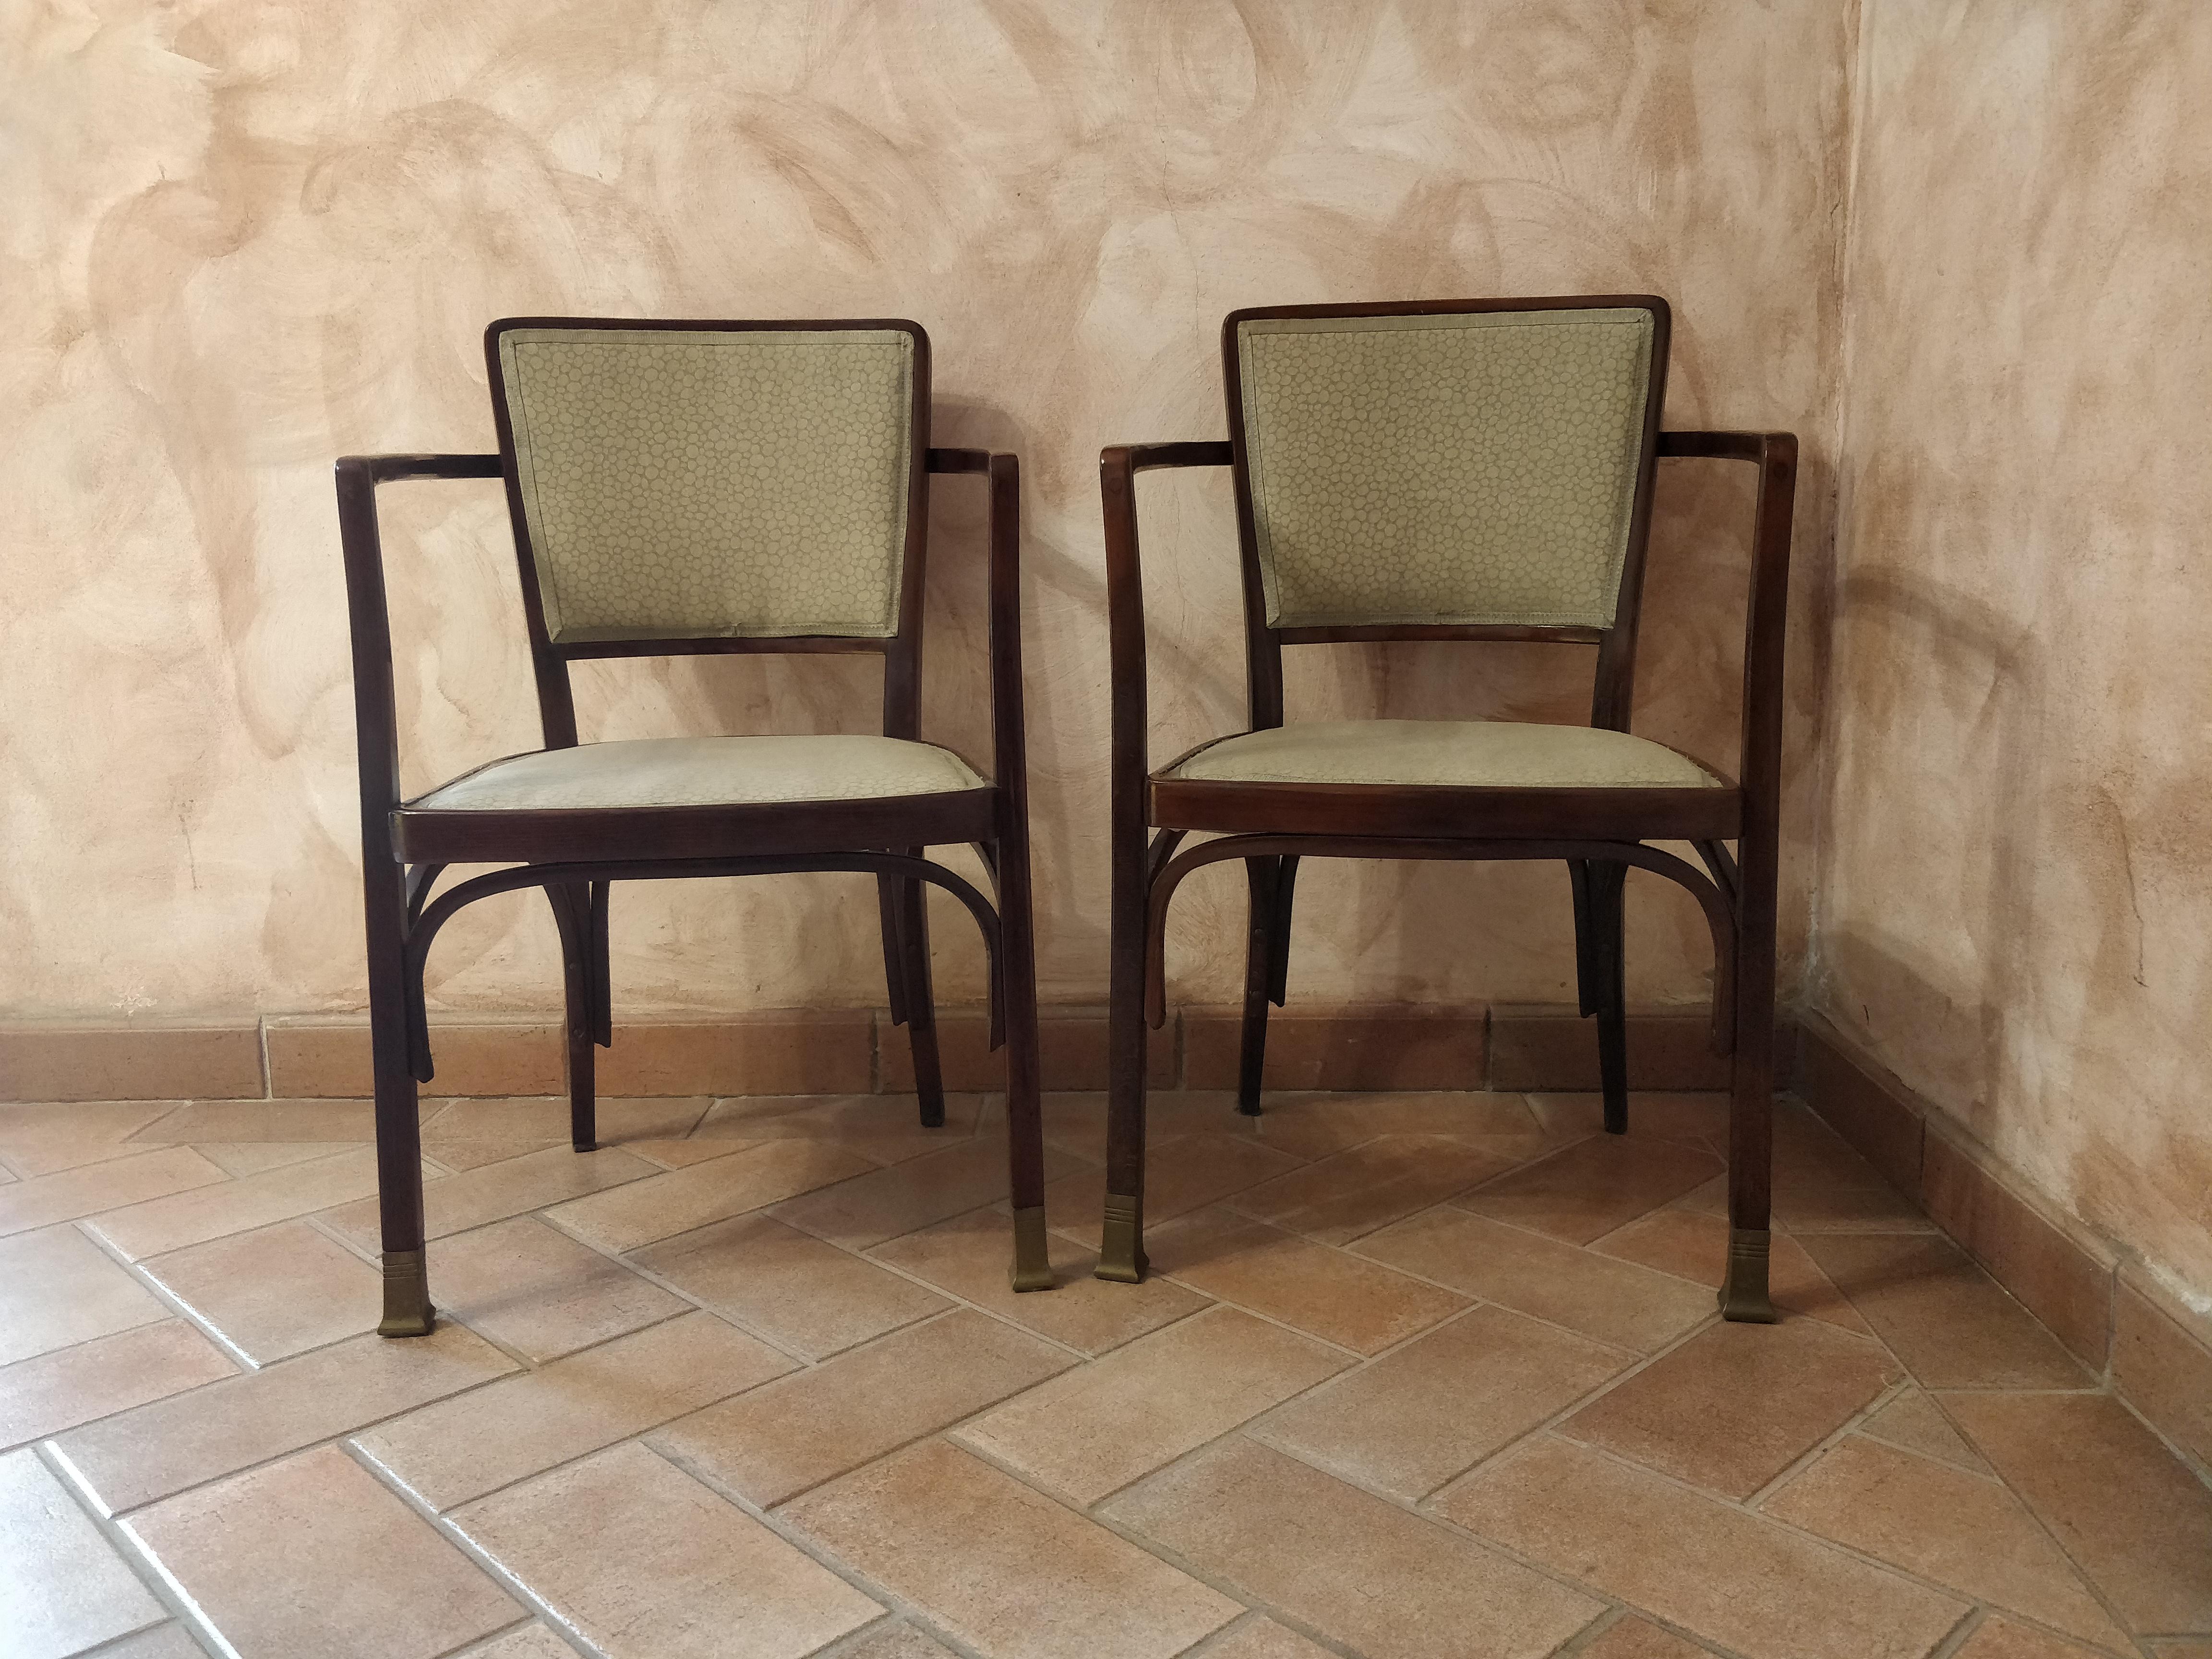  Paire de fauteuils 1902s mod. 719 avec expertise  de la galerie BEL ETAGE Wien.
Fabriqué  de J & J Kohn.
Matériaux : Beeche et laiton.
Ce fauteuil  ont été conçus vers 1901 par Moser (Wien 1868-1918)
 l'un des plus importants représentants de l'art